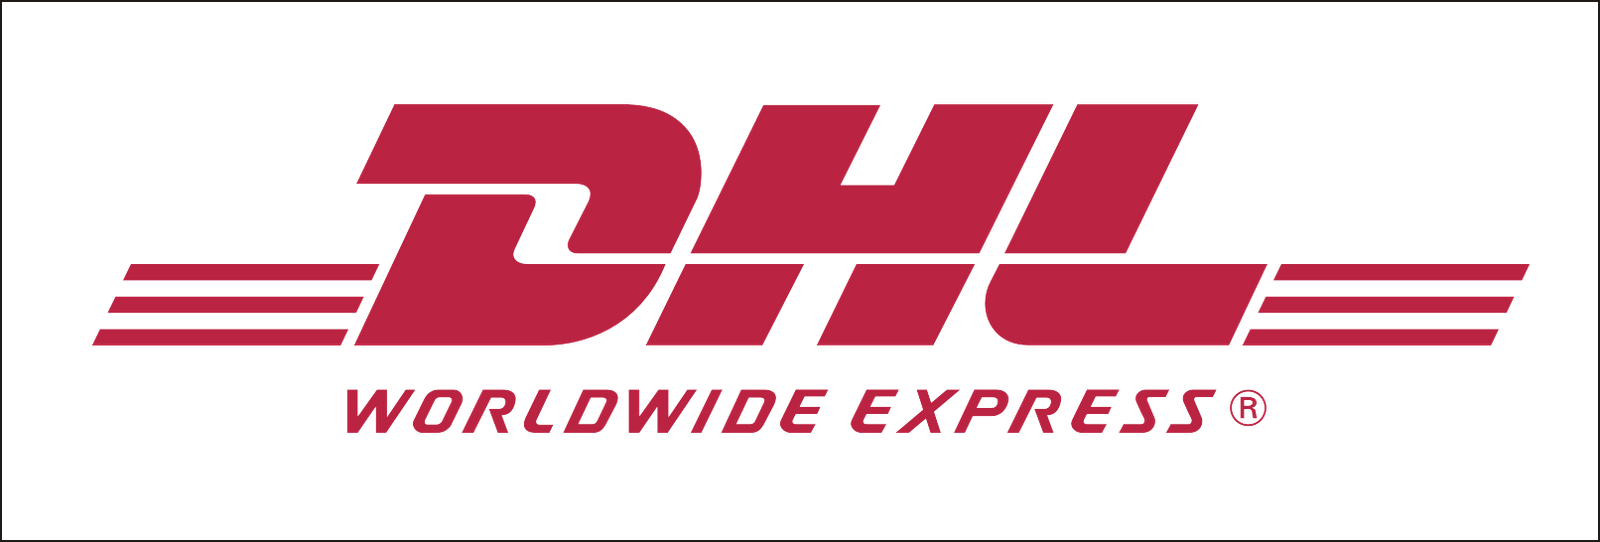 DHL Worldwide Express Logo - Dhl Png Logo Icon - Free Transparent PNG Logos